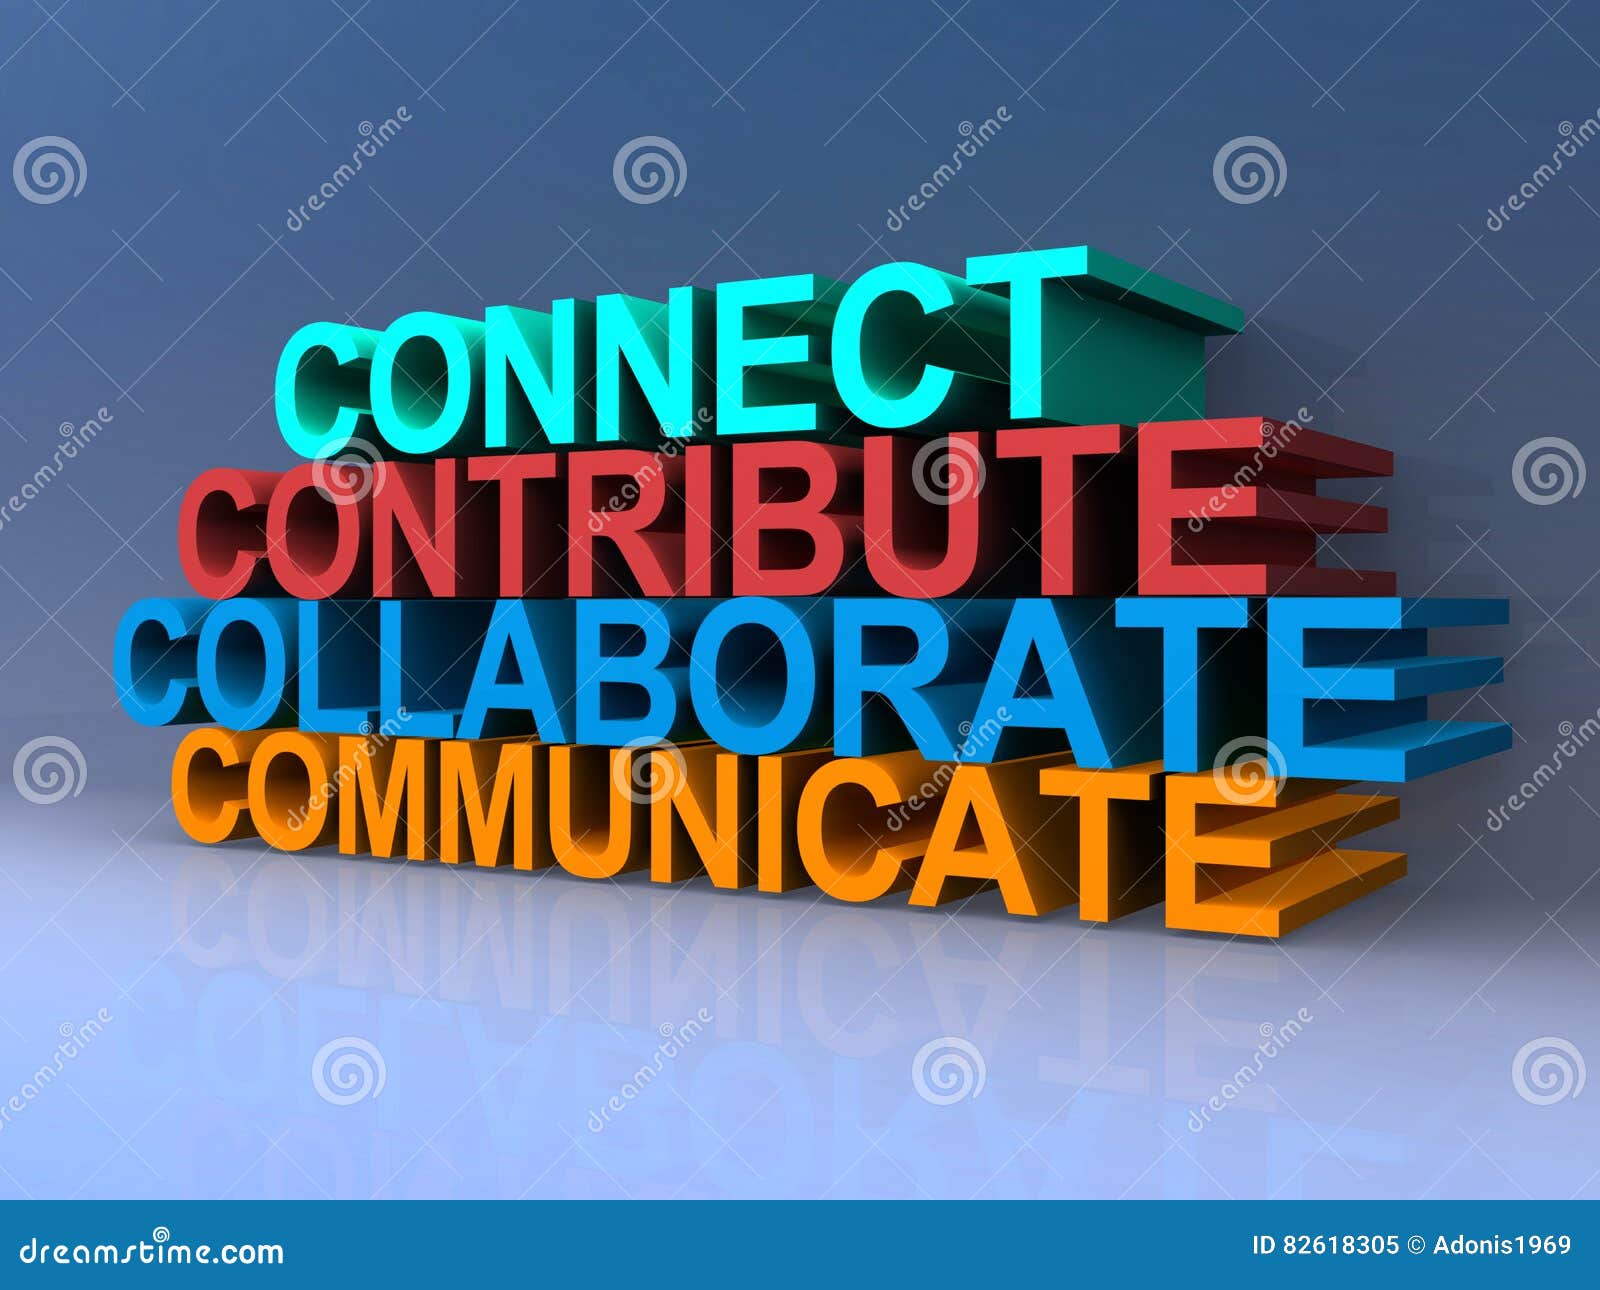 connect, contribute, collaborate, communicate